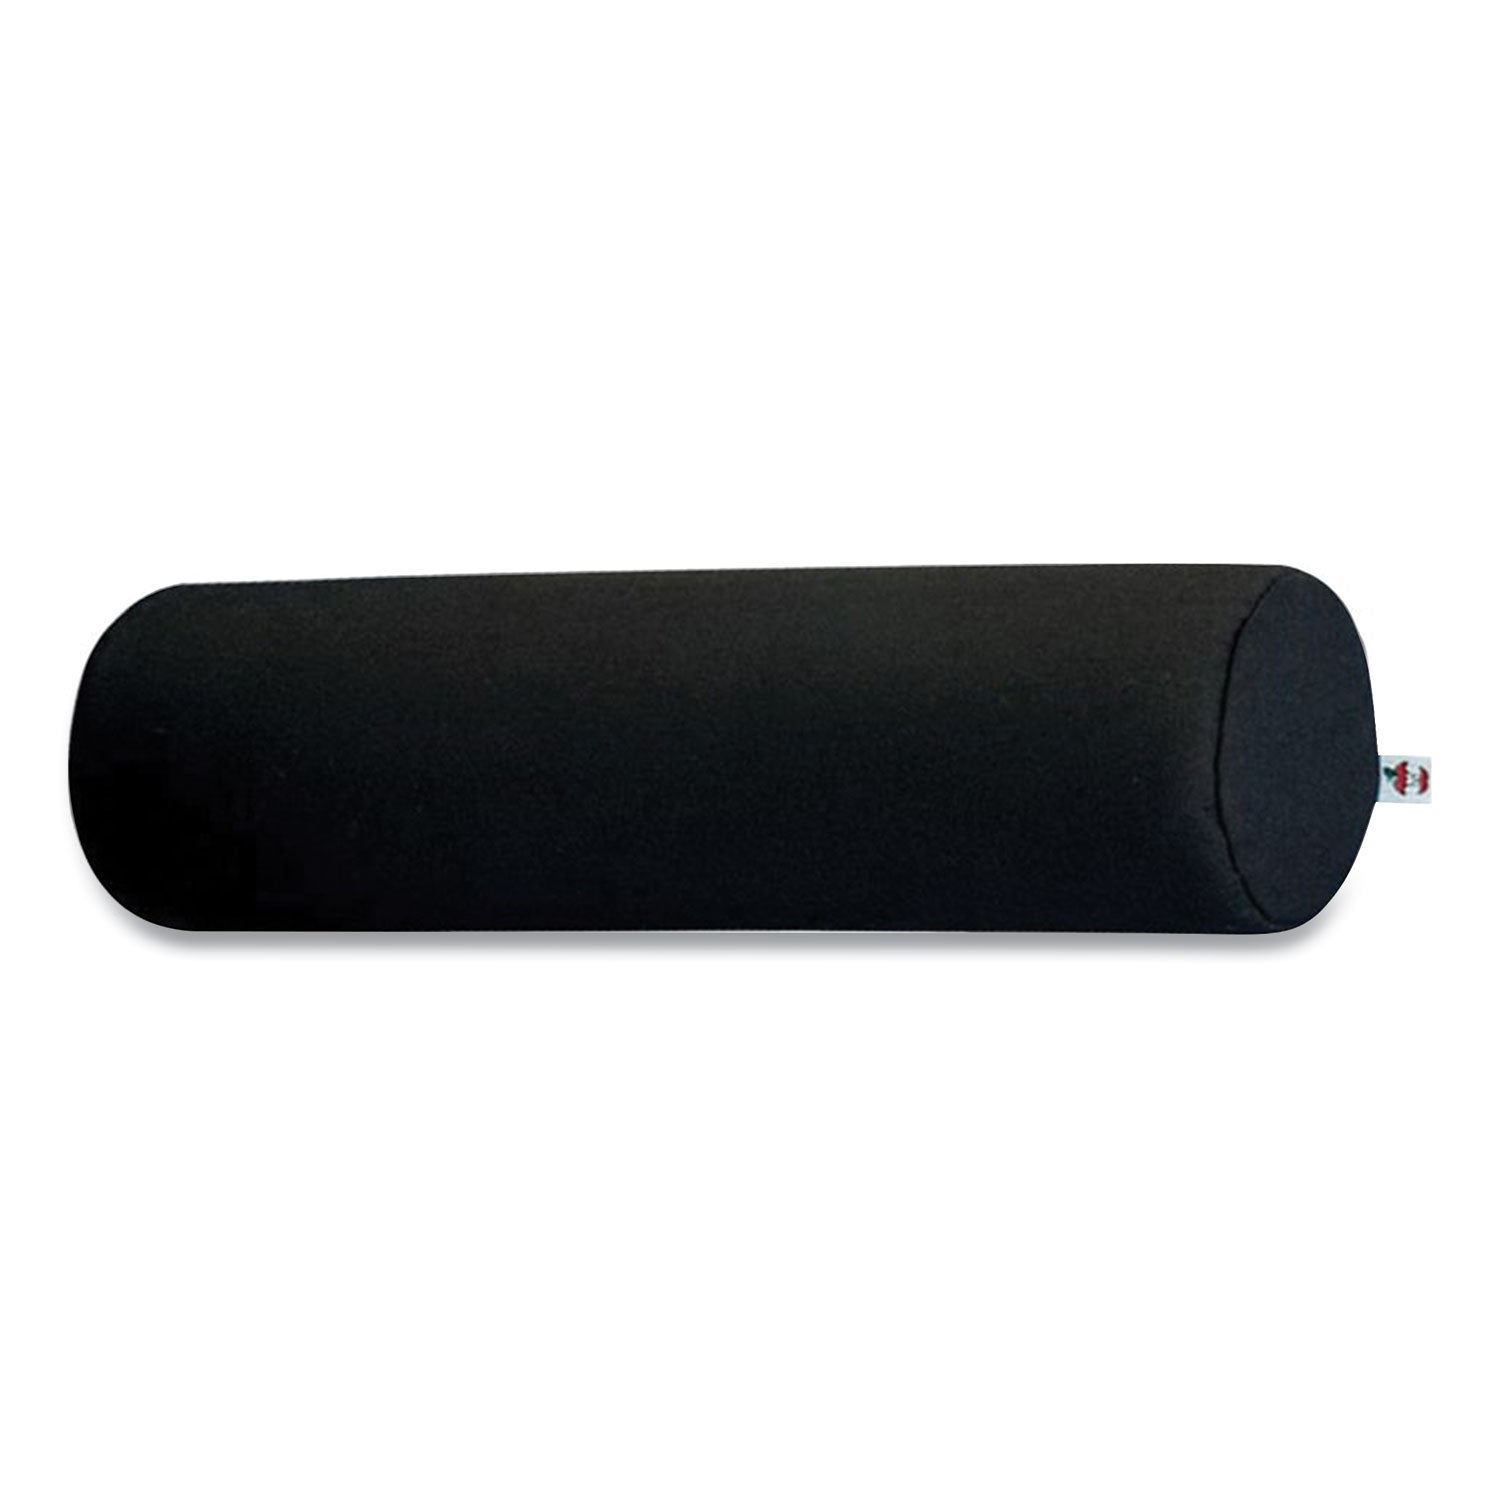 foam-roll-positioning-pillow-standard-135-x-375-black_coerol314 - 1